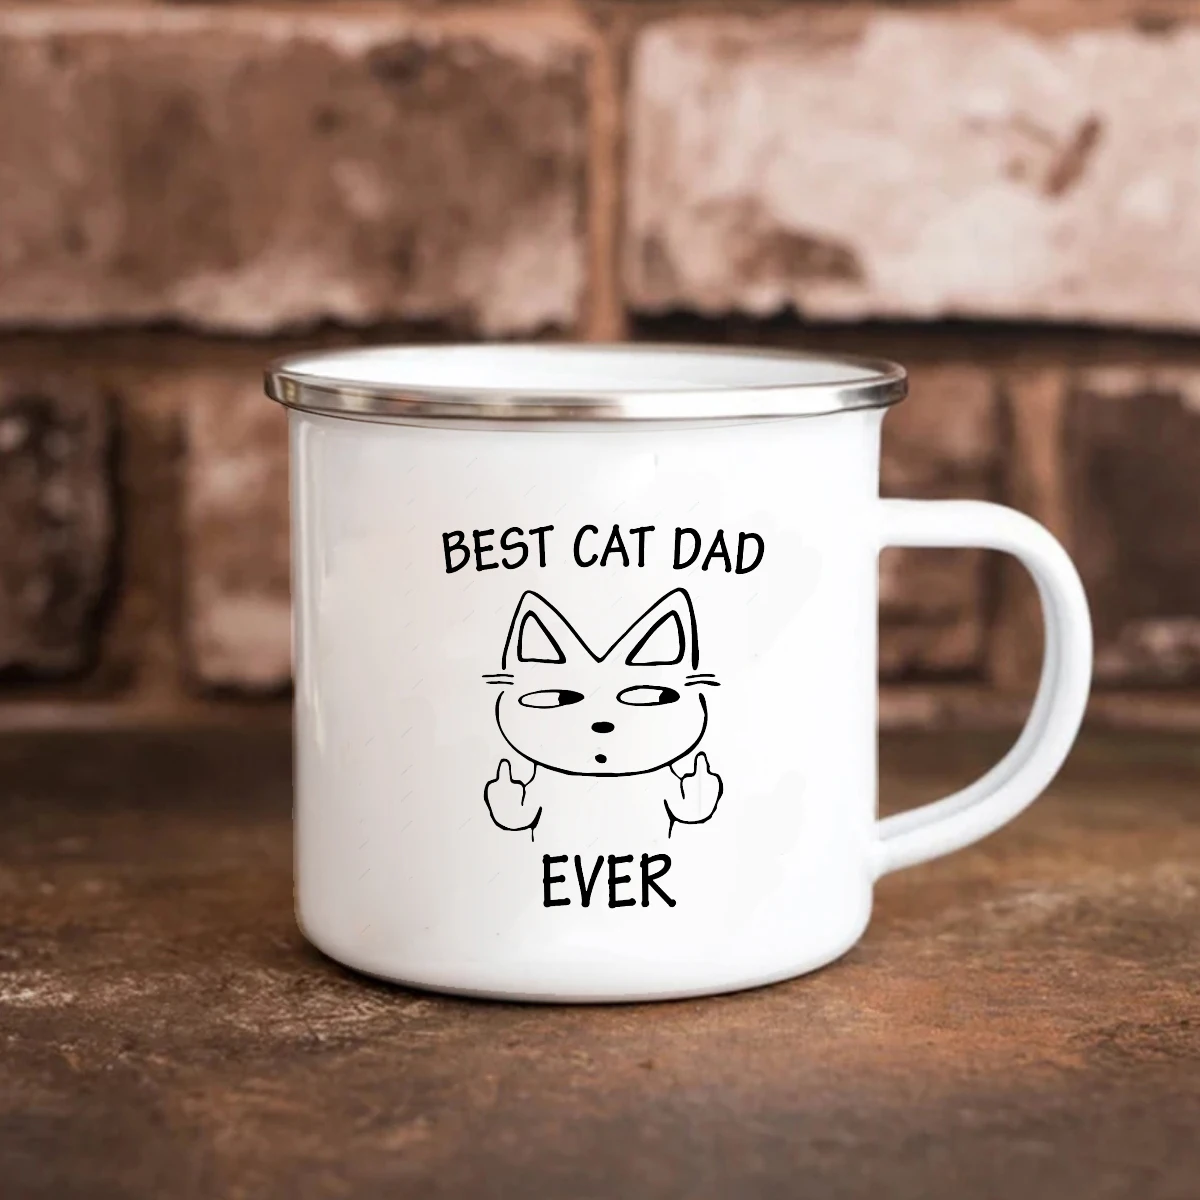 Best cat dad ever mug 11oz Travel Coffee Mug 350ml Enamel Milk Mug Cup cat lover father Birthday Gift Mug